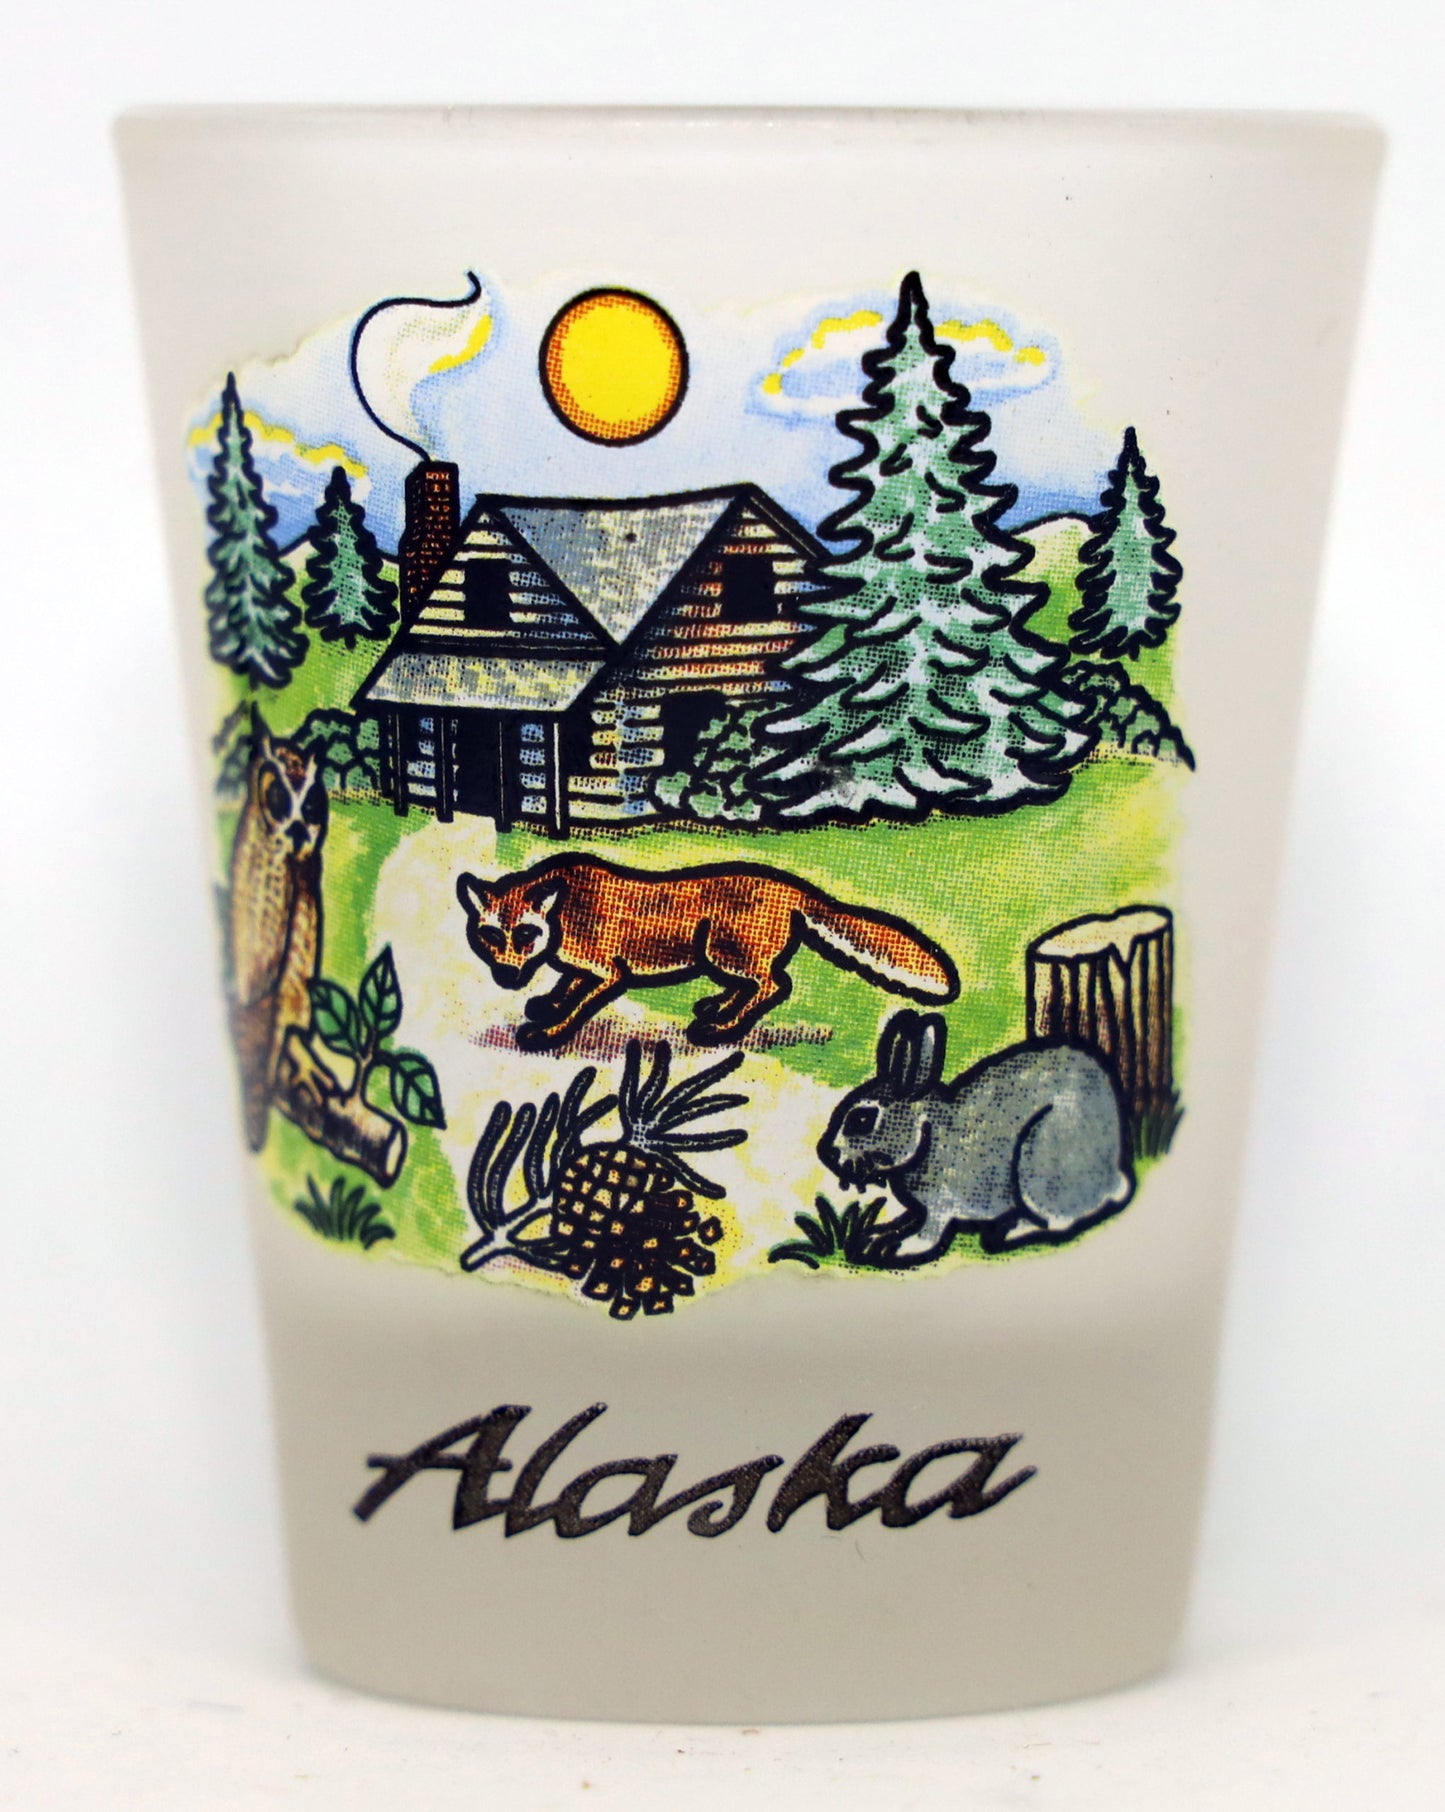 Alaska Log Cabin Souvenir Collectible shot glass